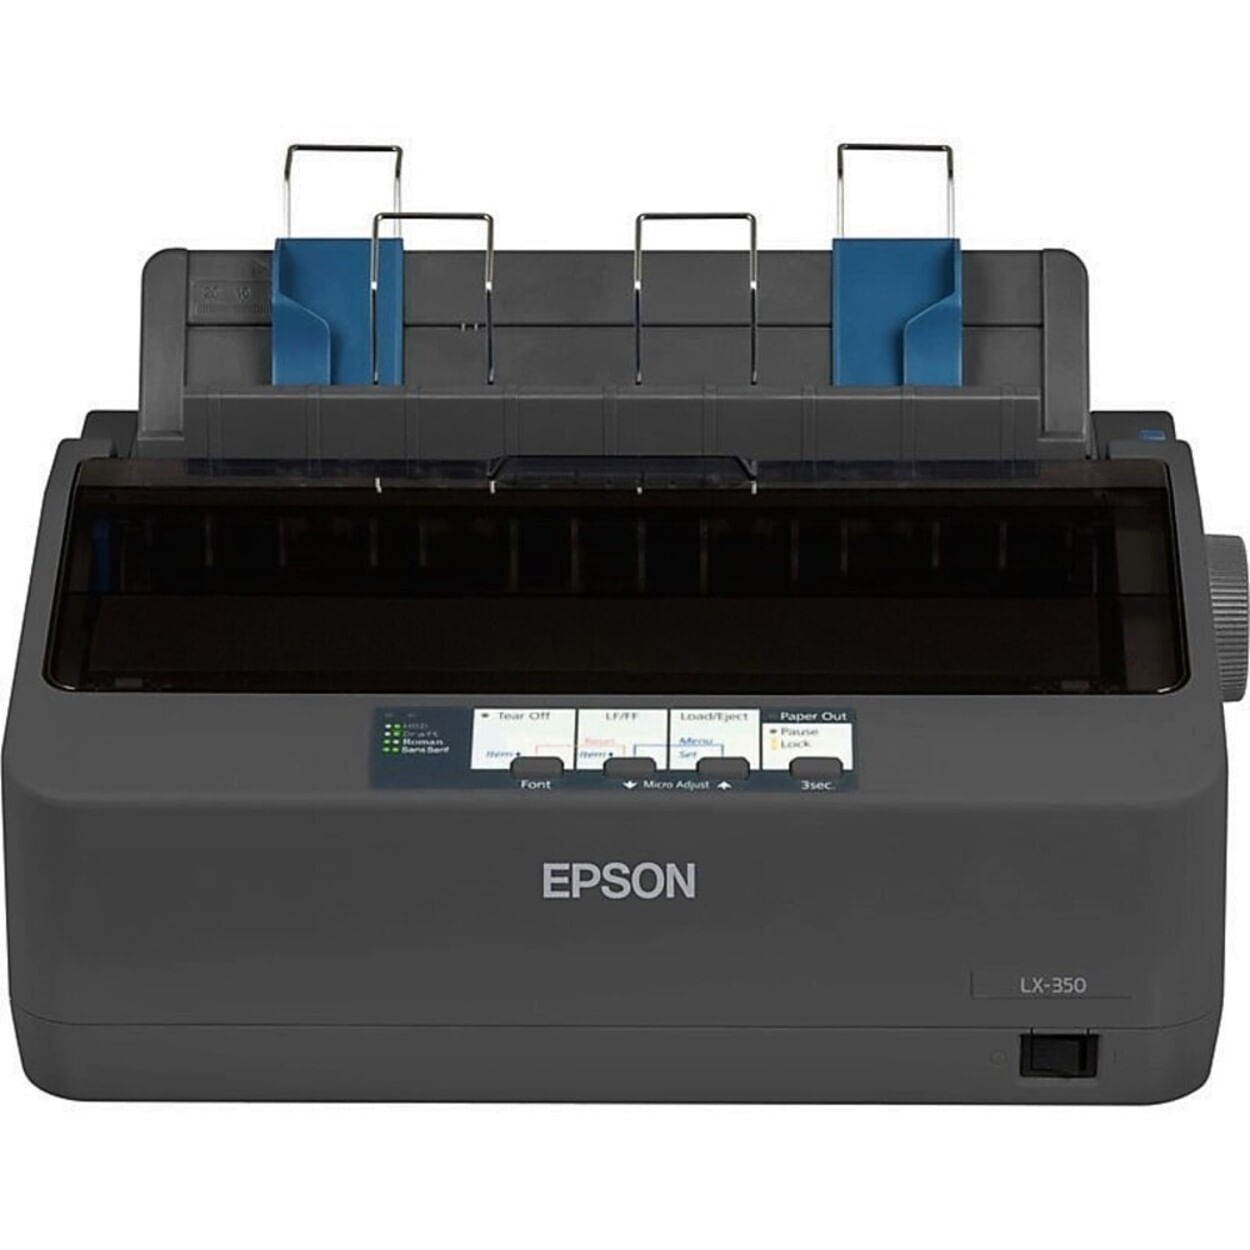 Impresora Epson LX-350 Matricial Velocidad Máxima 347cps de Impacto 9 Pines